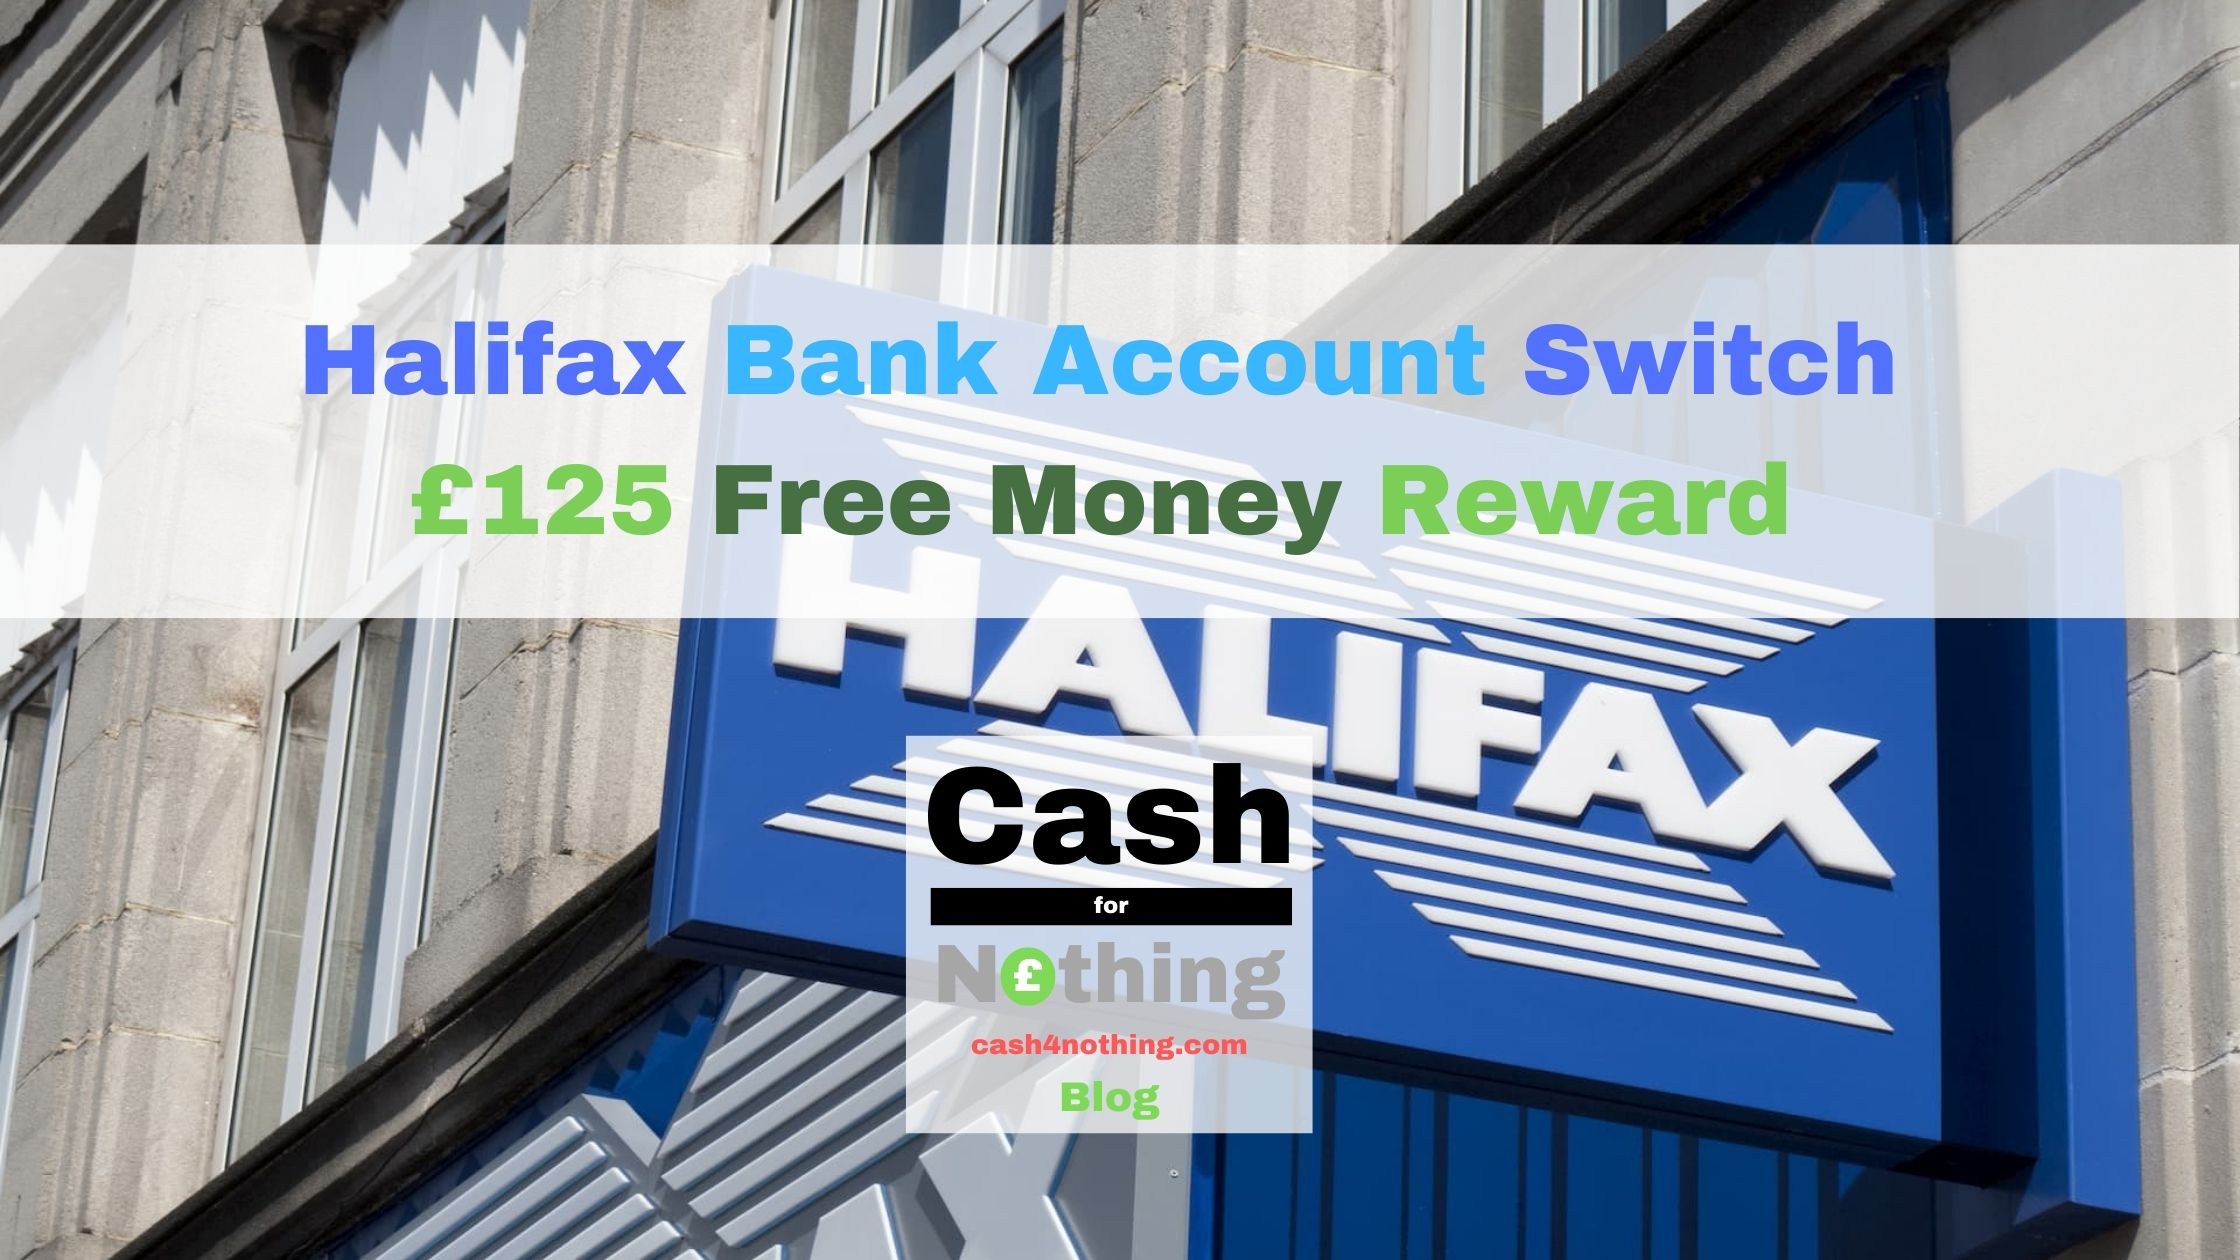 Cash4Nothing April 2022 Halifax £125 Bank Switch Reward